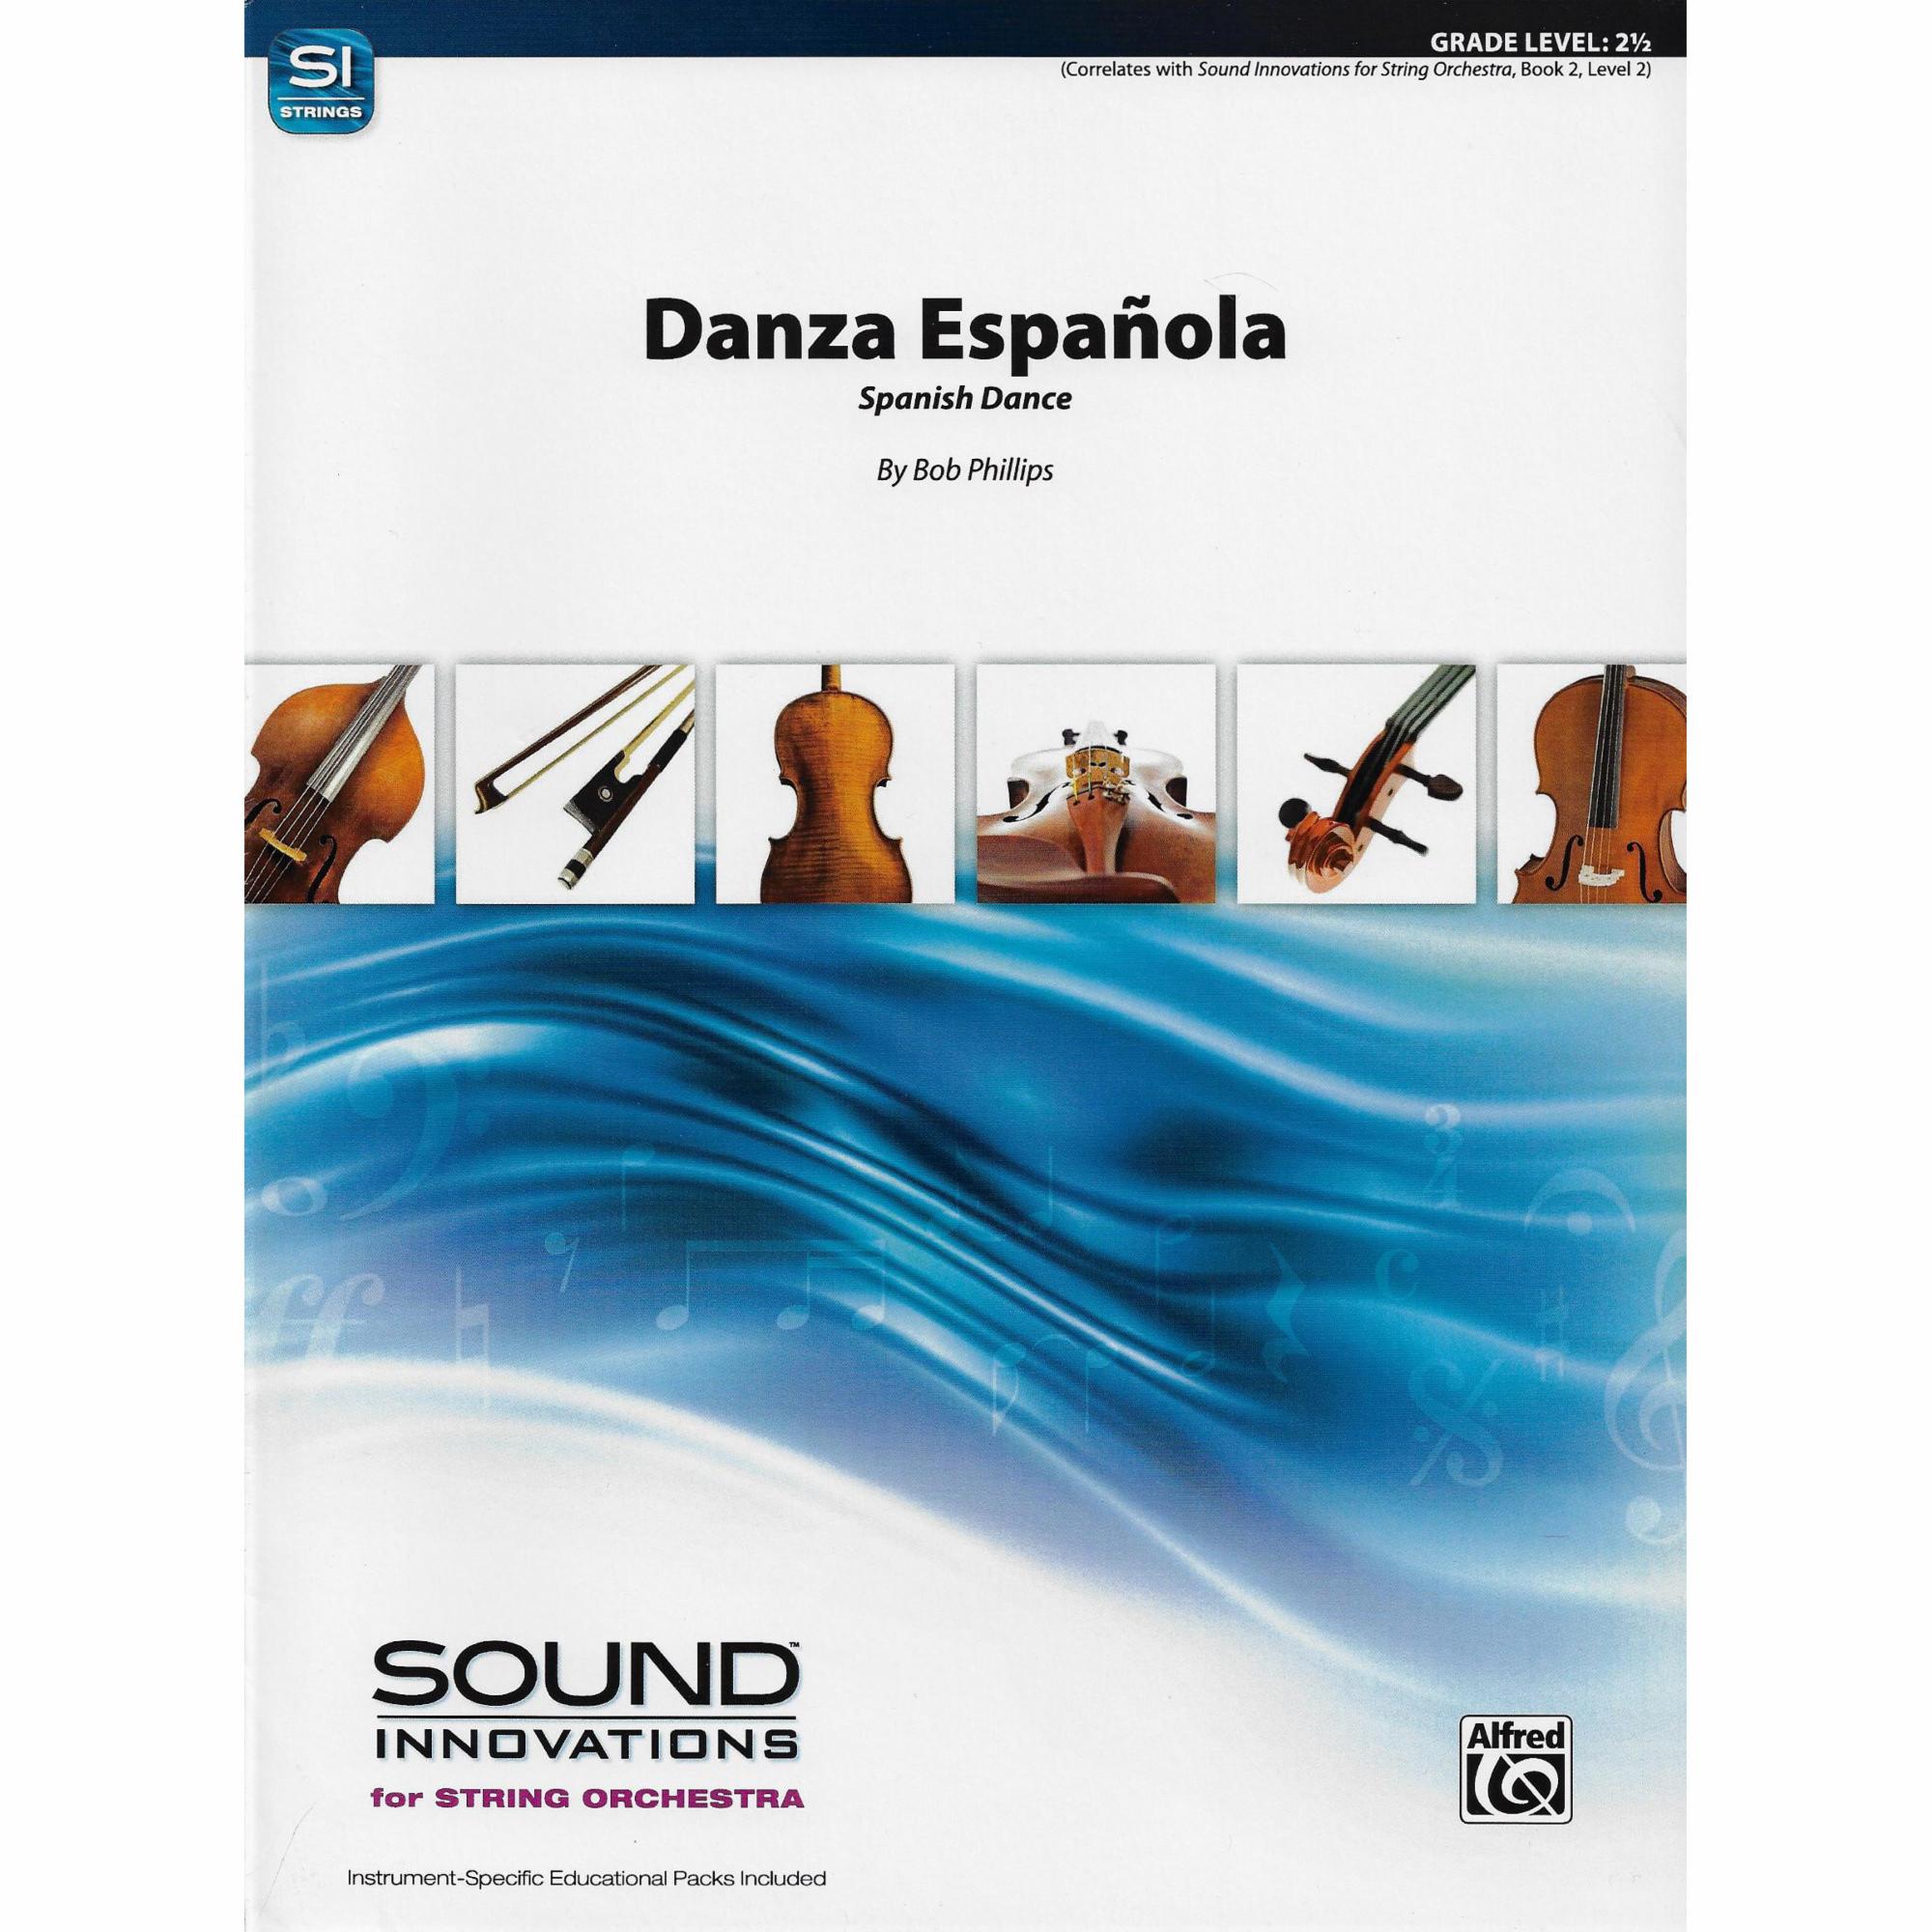 Danza Espanola for String Orchestra